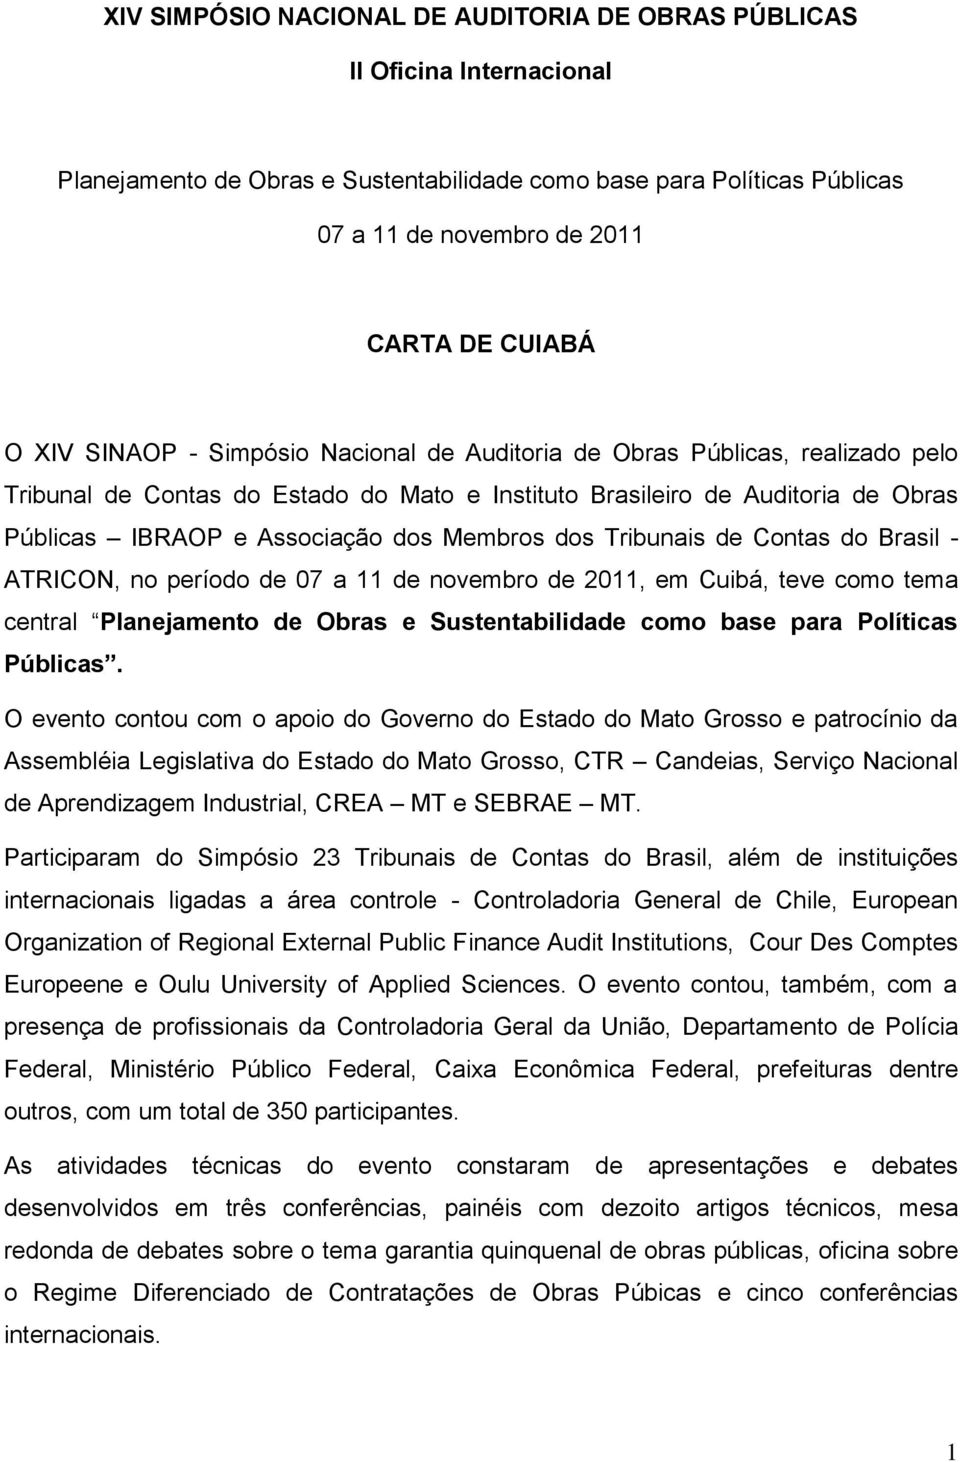 Membros dos Tribunais de Contas do Brasil - ATRICON, no período de 07 a 11 de novembro de 2011, em Cuibá, teve como tema central Planejamento de Obras e Sustentabilidade como base para Políticas